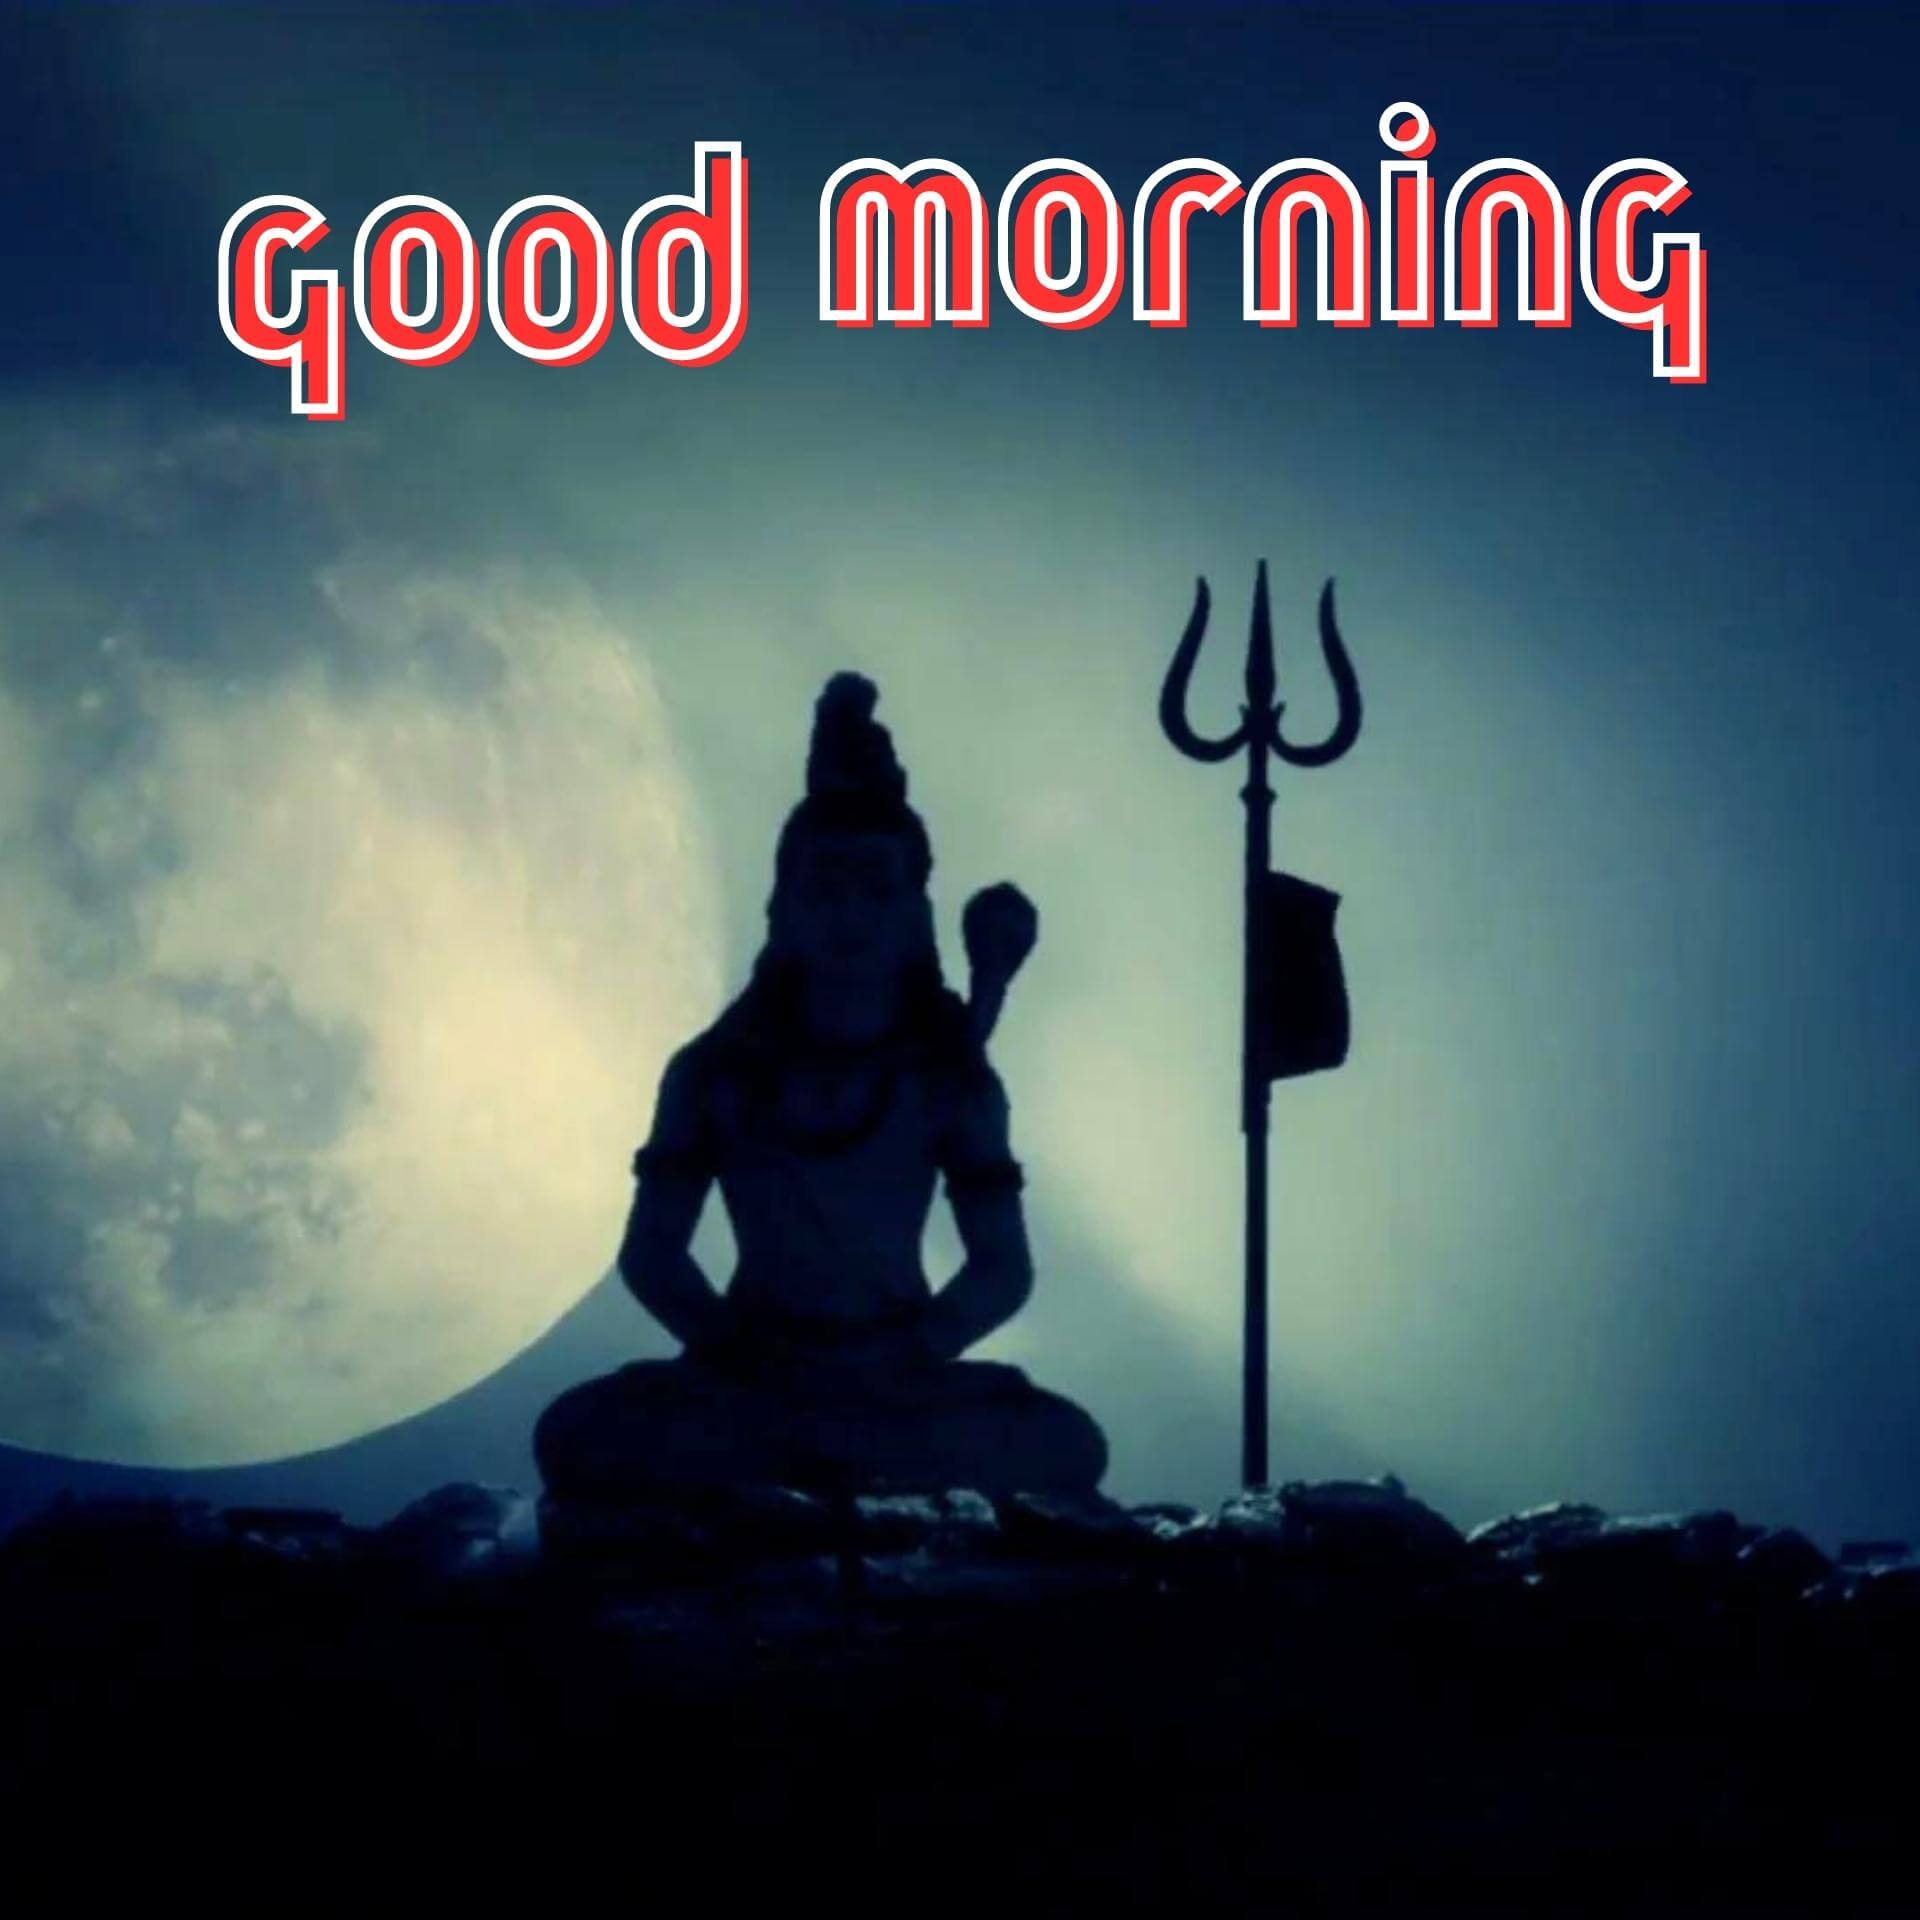 Shiva God Good Morning Photo